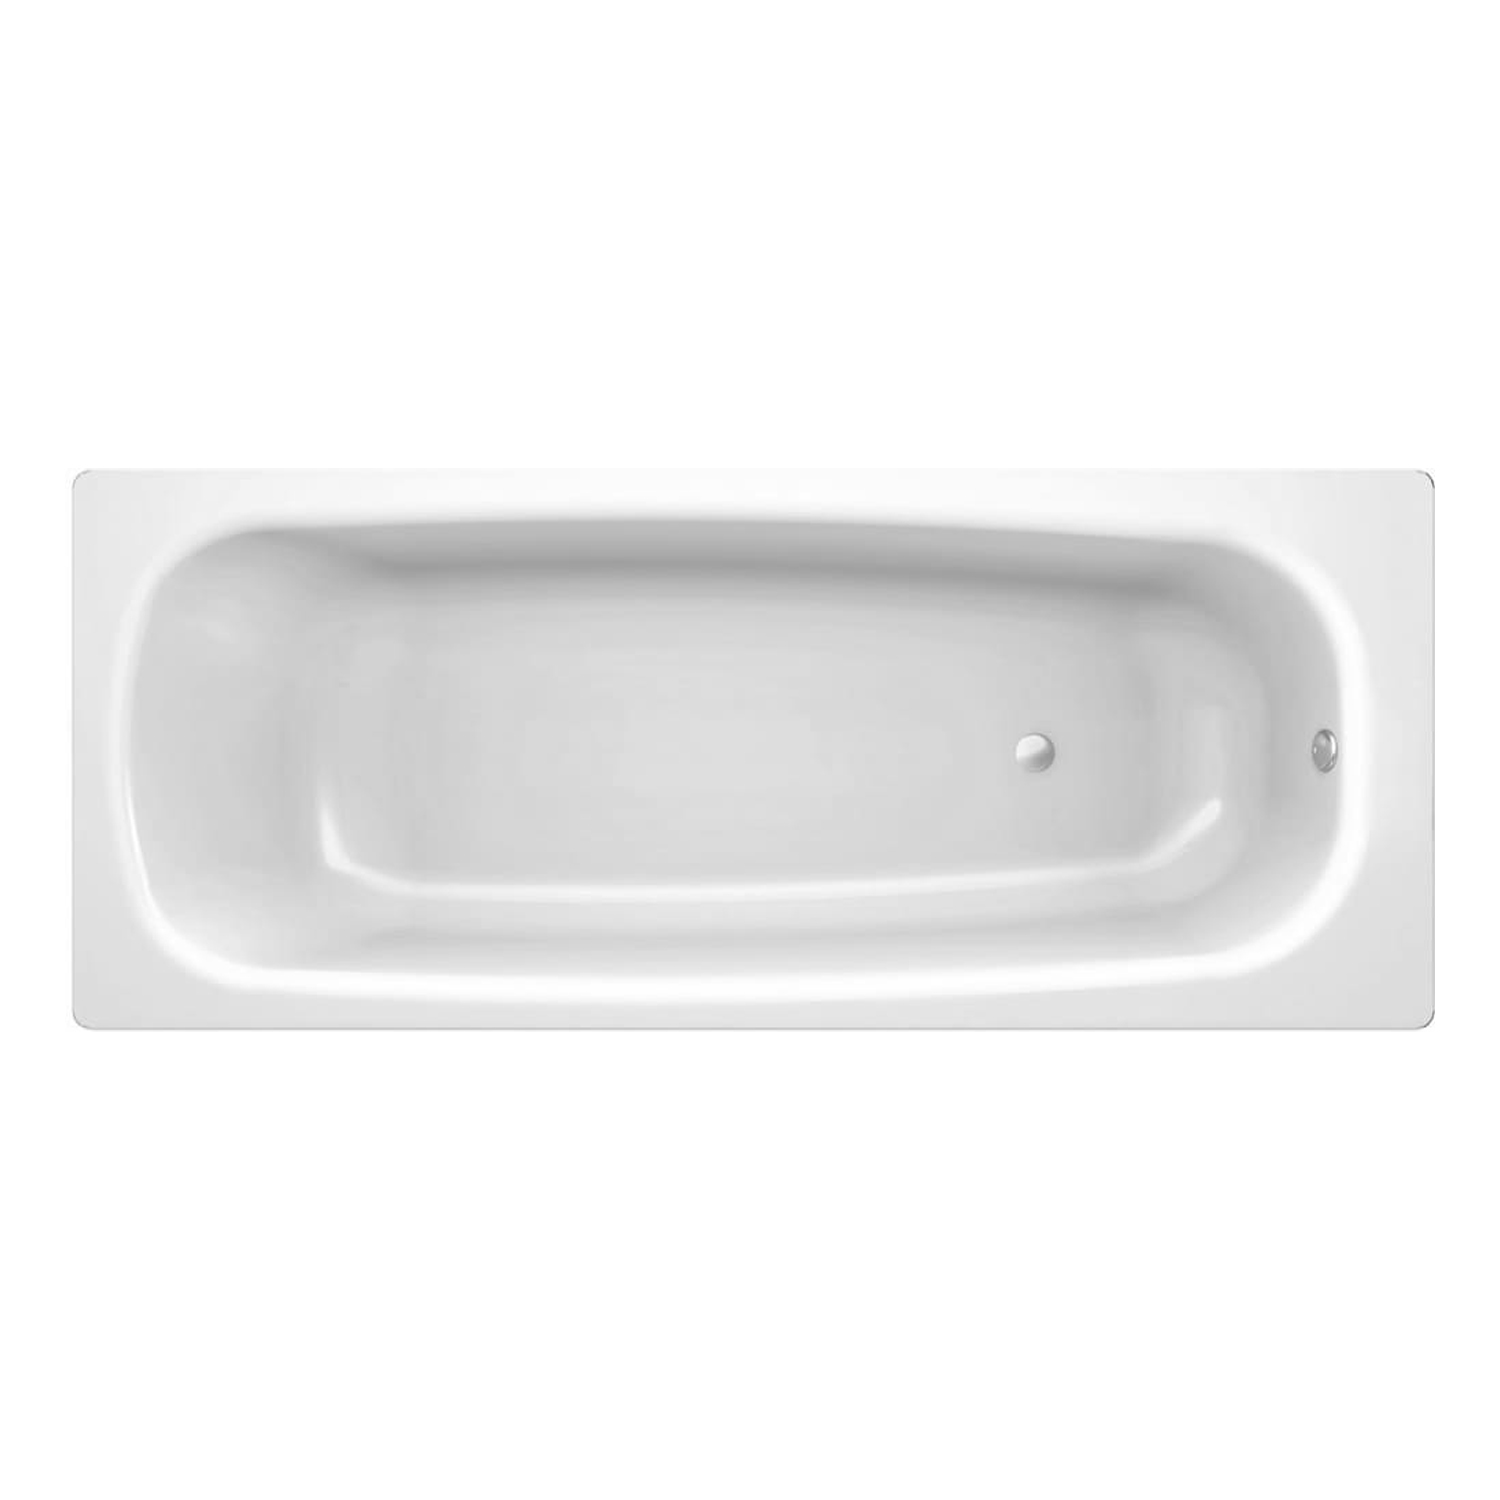 Стальная ванна Sanitana BLB Universal S398043AH000000 (B75HAH001), 170х75, с шумоизоляцией стальная ванна sanitana blb universal s398043ah000000 b75hah001 170х75 с шумоизоляцией